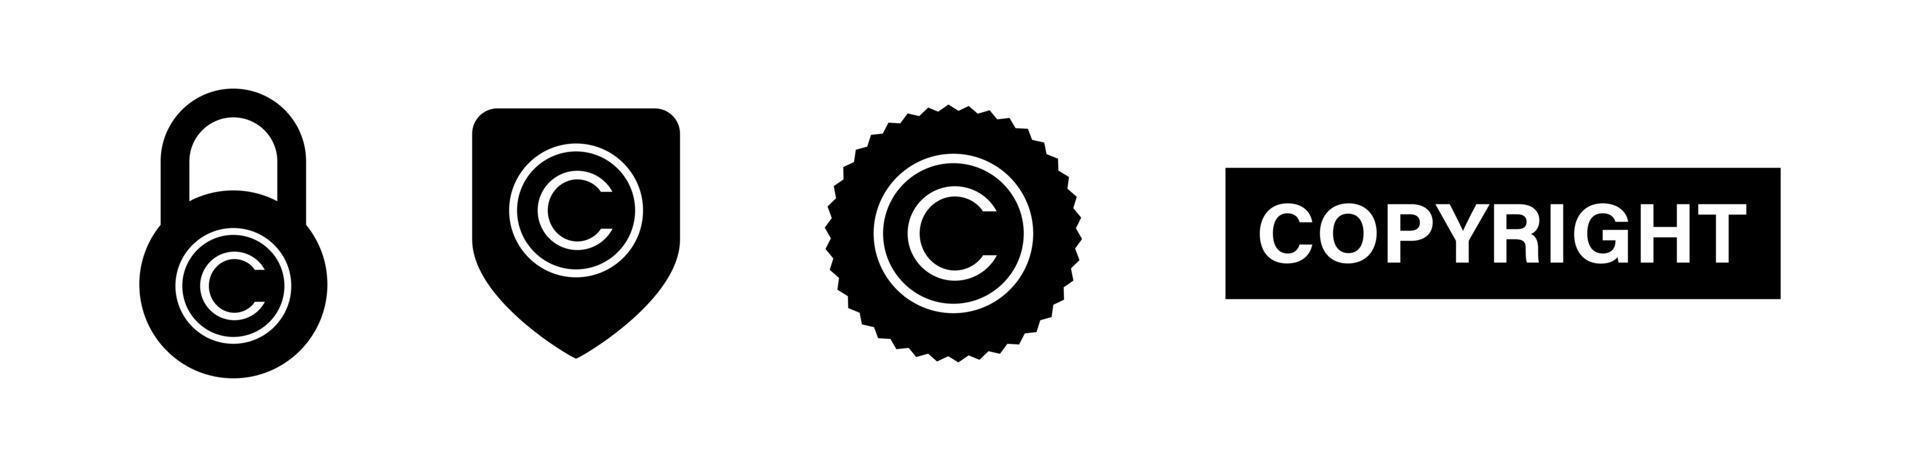 Copyright-Symbol-Symbol in unterschiedlicher Form-Vektor-Illustration. Zeichensatz für geistiges Eigentum. vektor